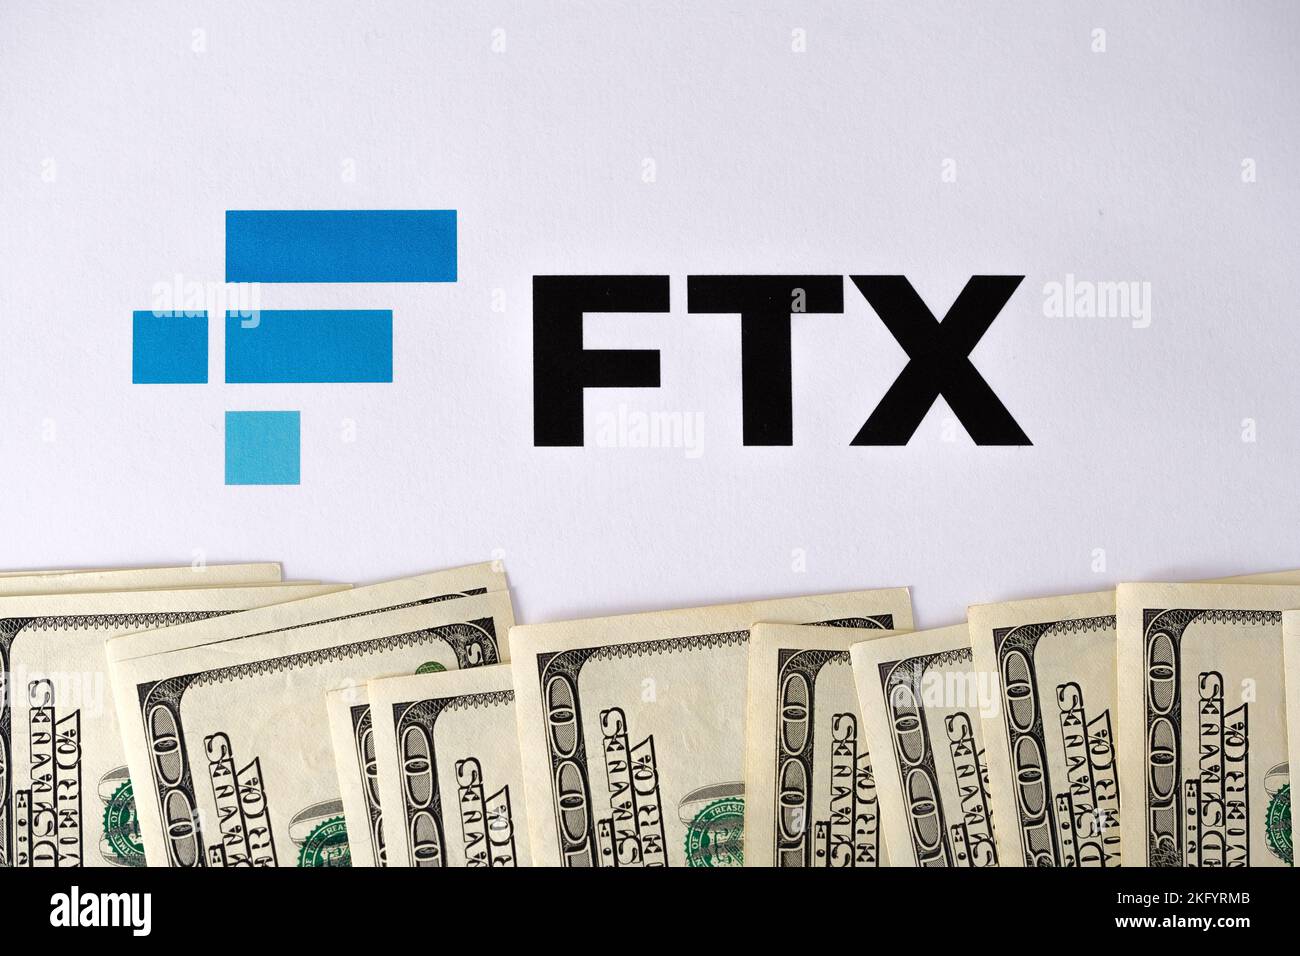 Le logo FTX crypto-monnaie est imprimé sur le papier et les billets en dollars américains qui l'entourent. Concept de faillite et de dette d'entreprise. Stafford, Royaume-Uni Banque D'Images